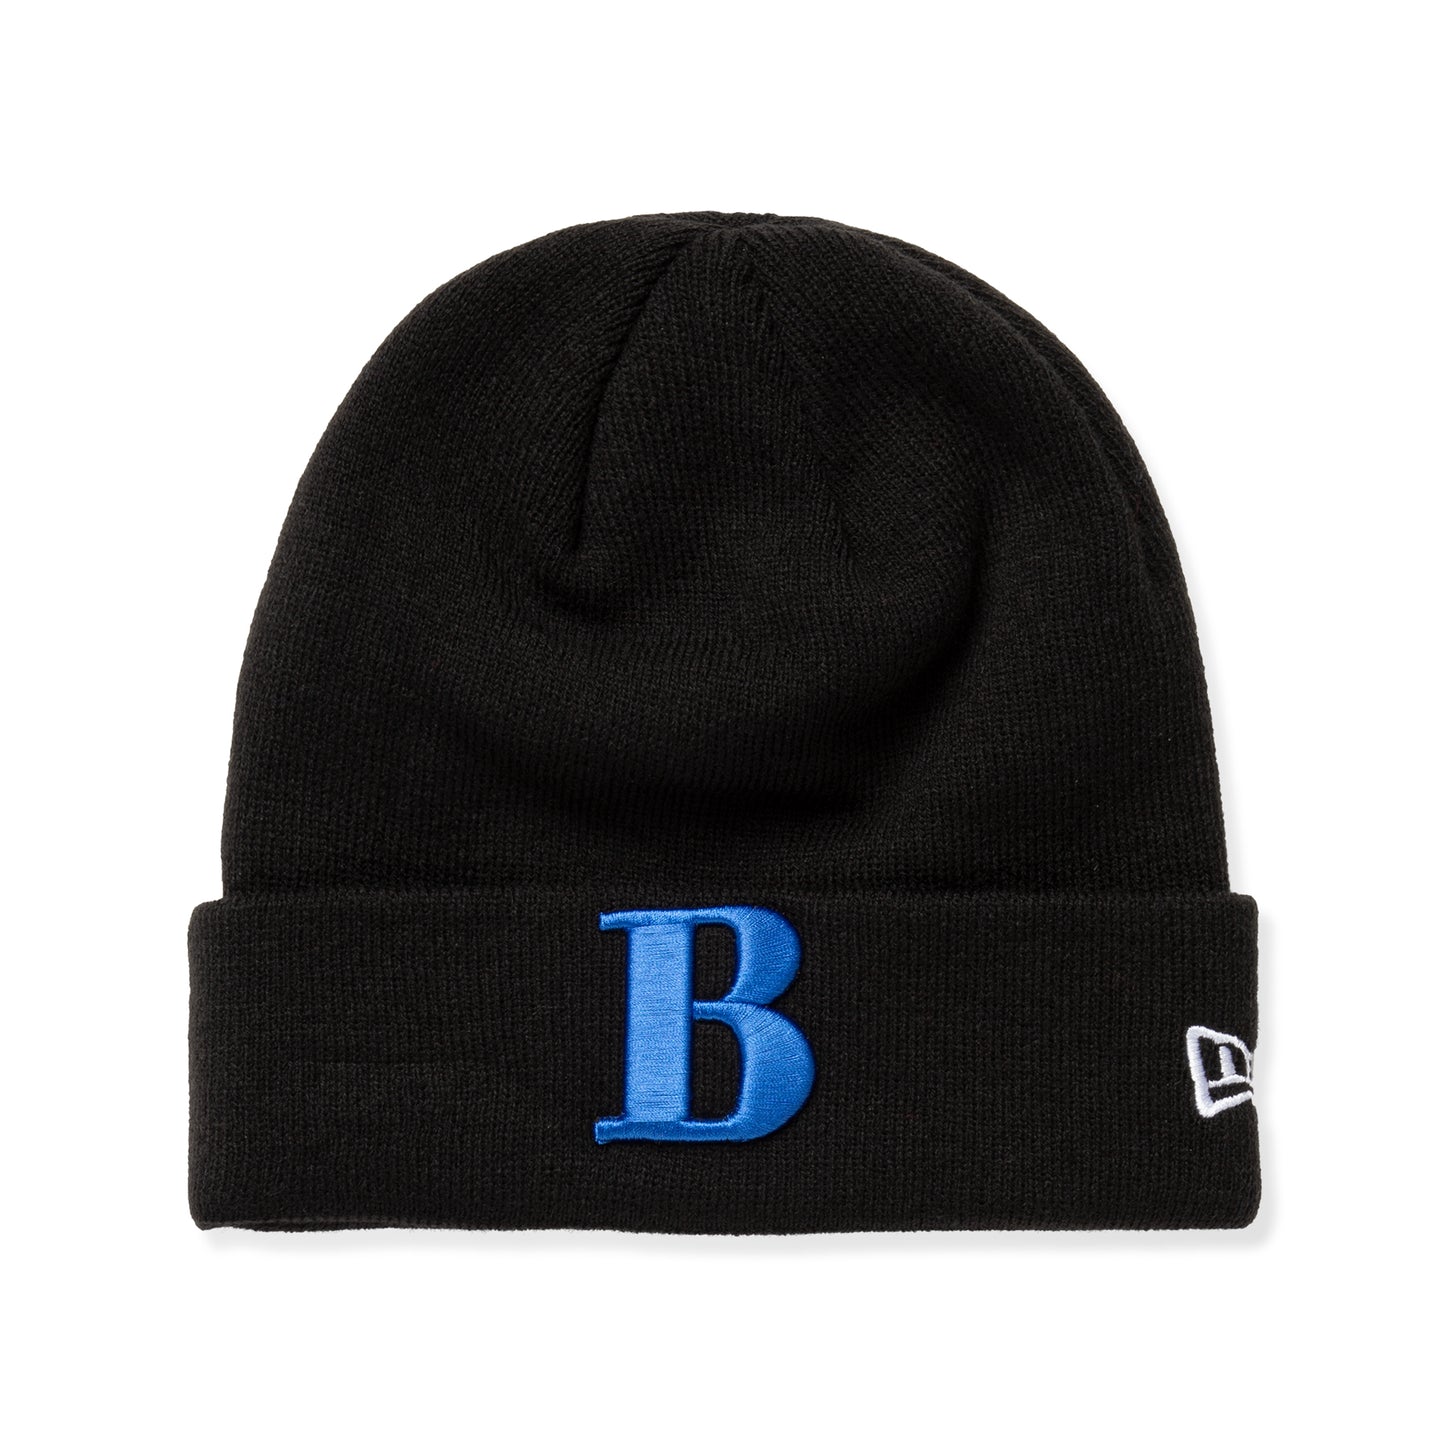 Better Gift Shop x New Era "B" Cuff Knit (Black)